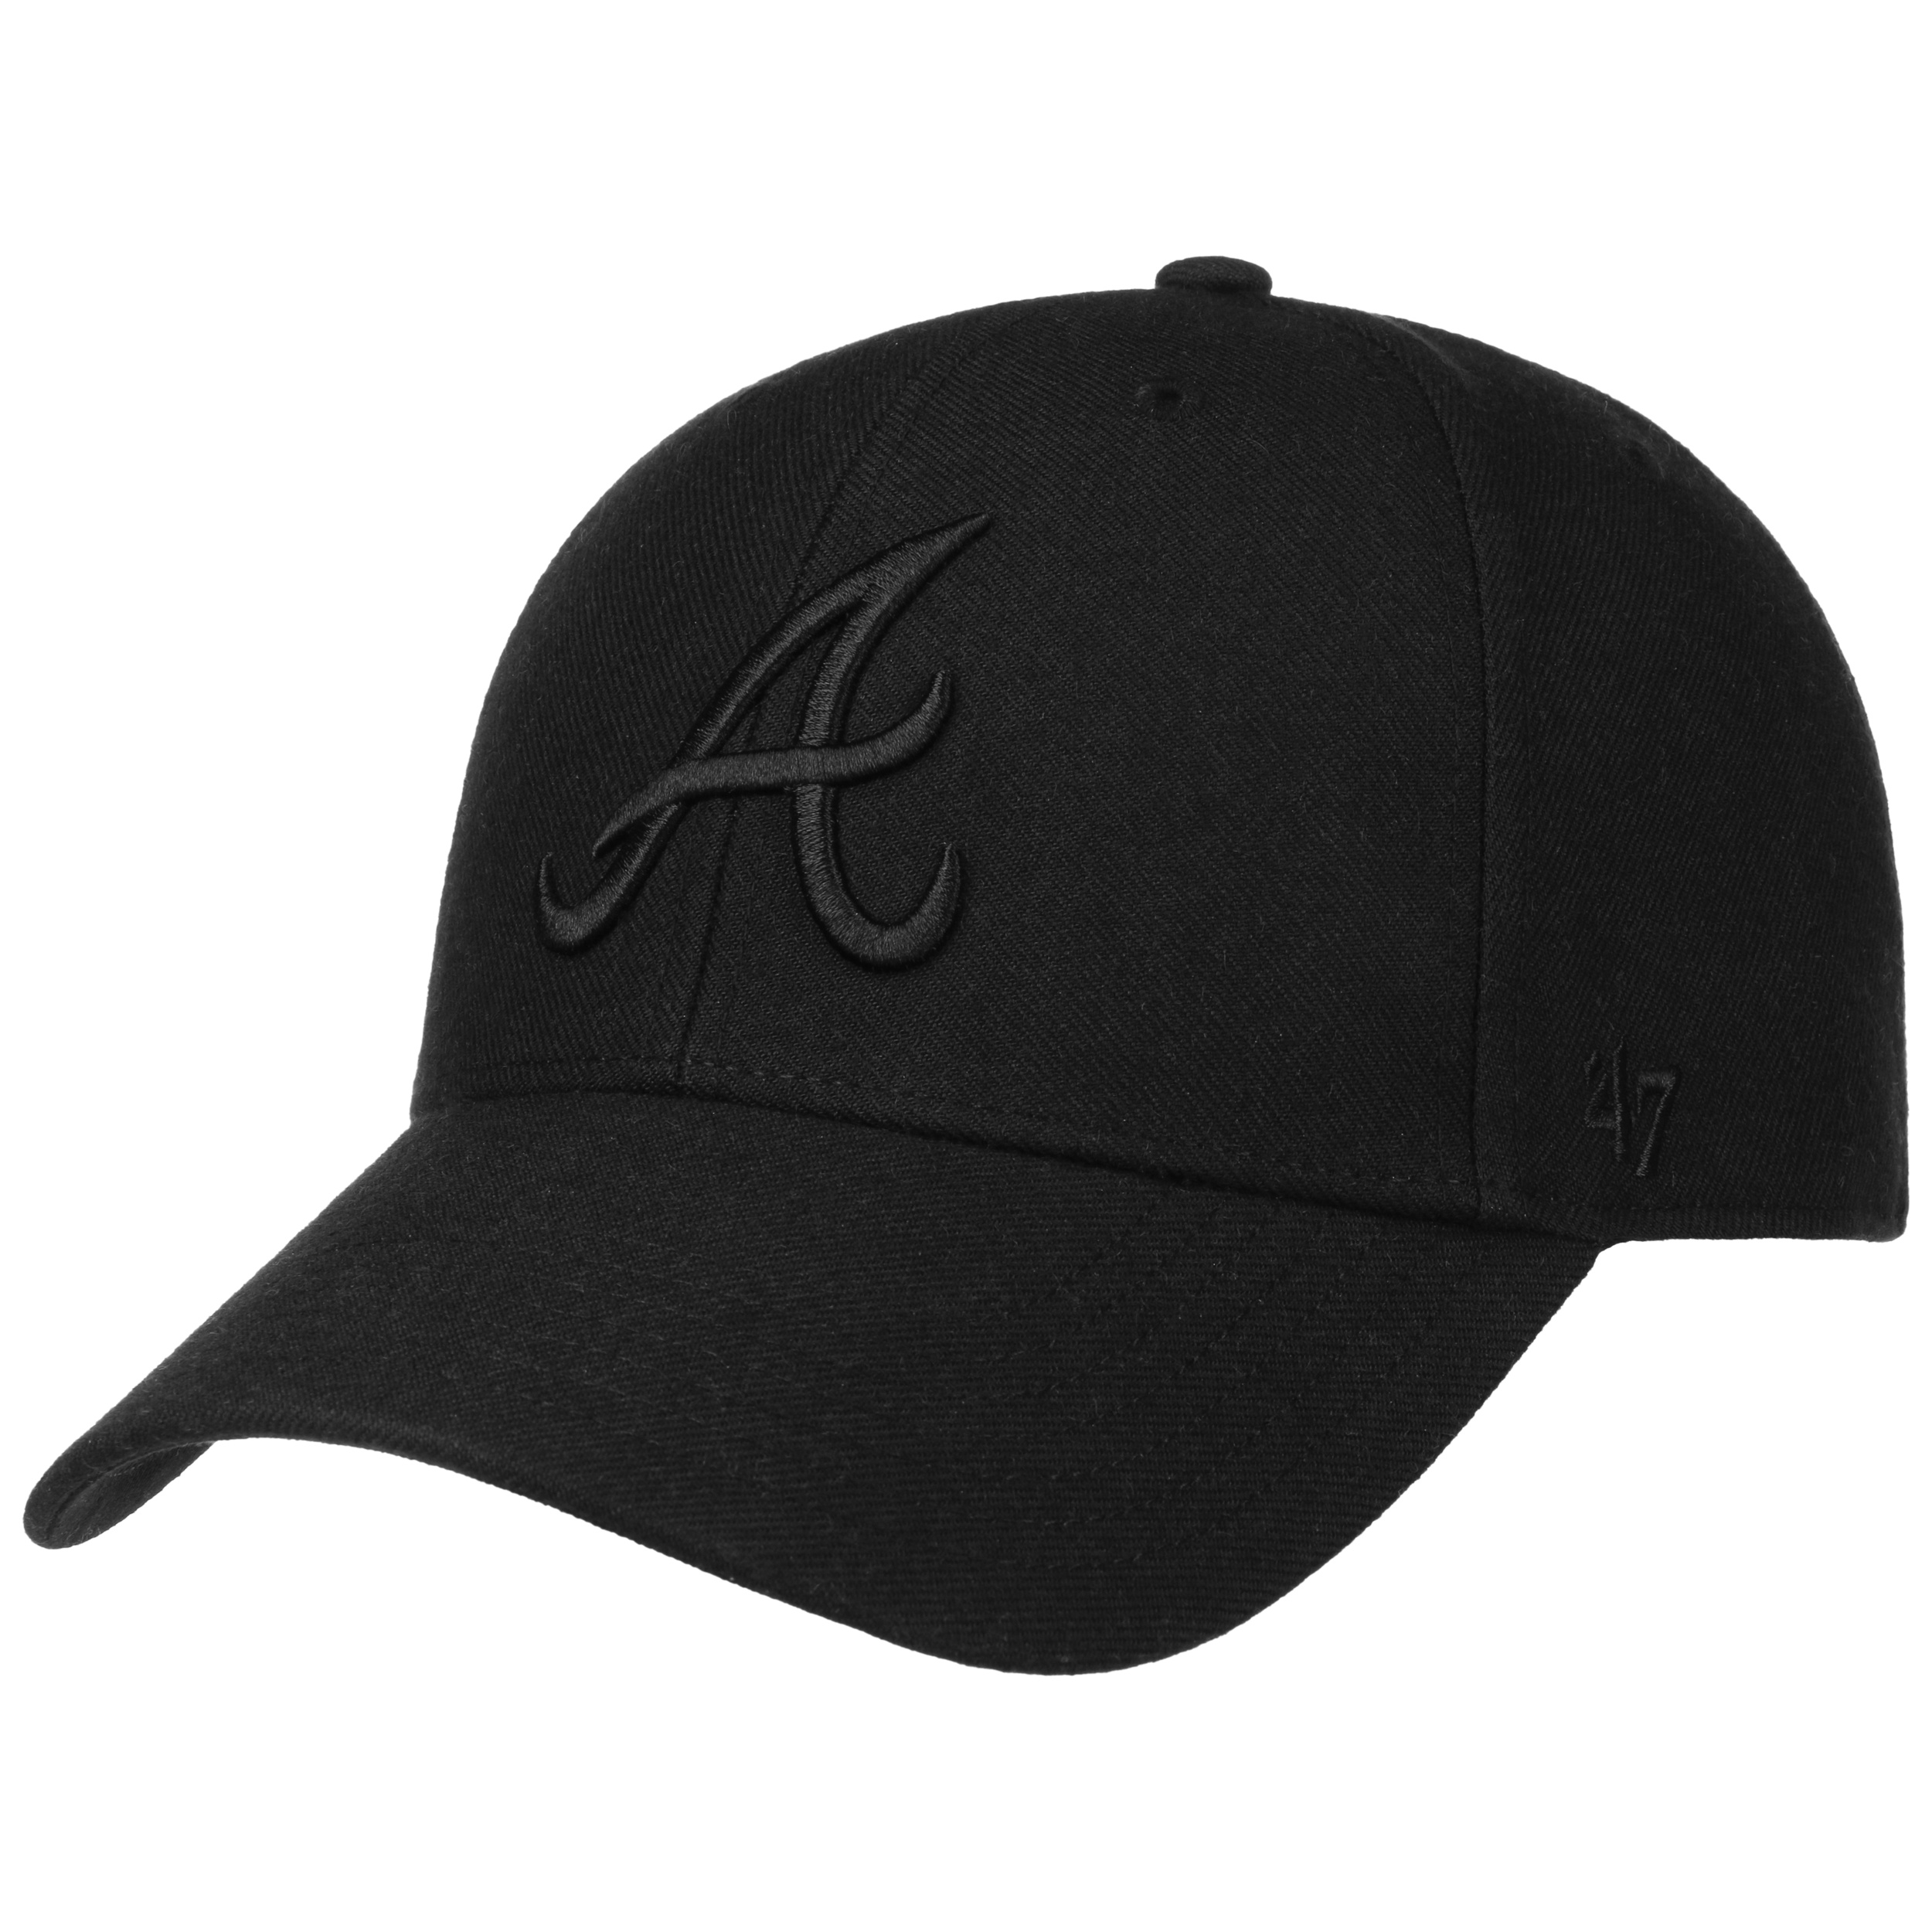 Vintage Atlanta Braves MLB Baseball Snap Back Hat Adjustable Adult Size